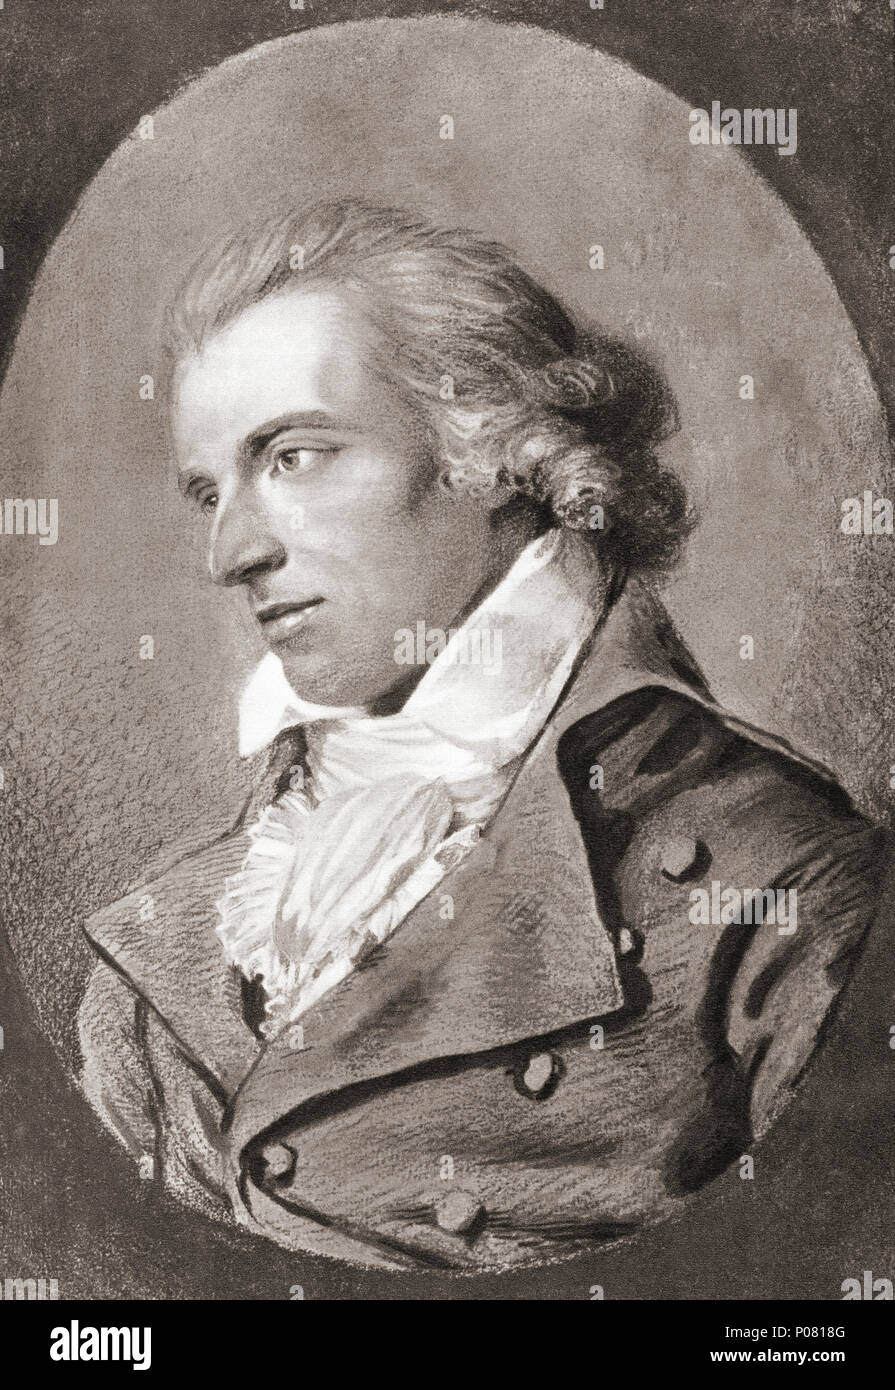 Johann Christoph Friedrich von Schiller, 1759 - 1805. Deutsche Dichter, Philosoph, Arzt, Historiker und Dramatiker. Nach einer zeitgenössischen Print. Stockfoto